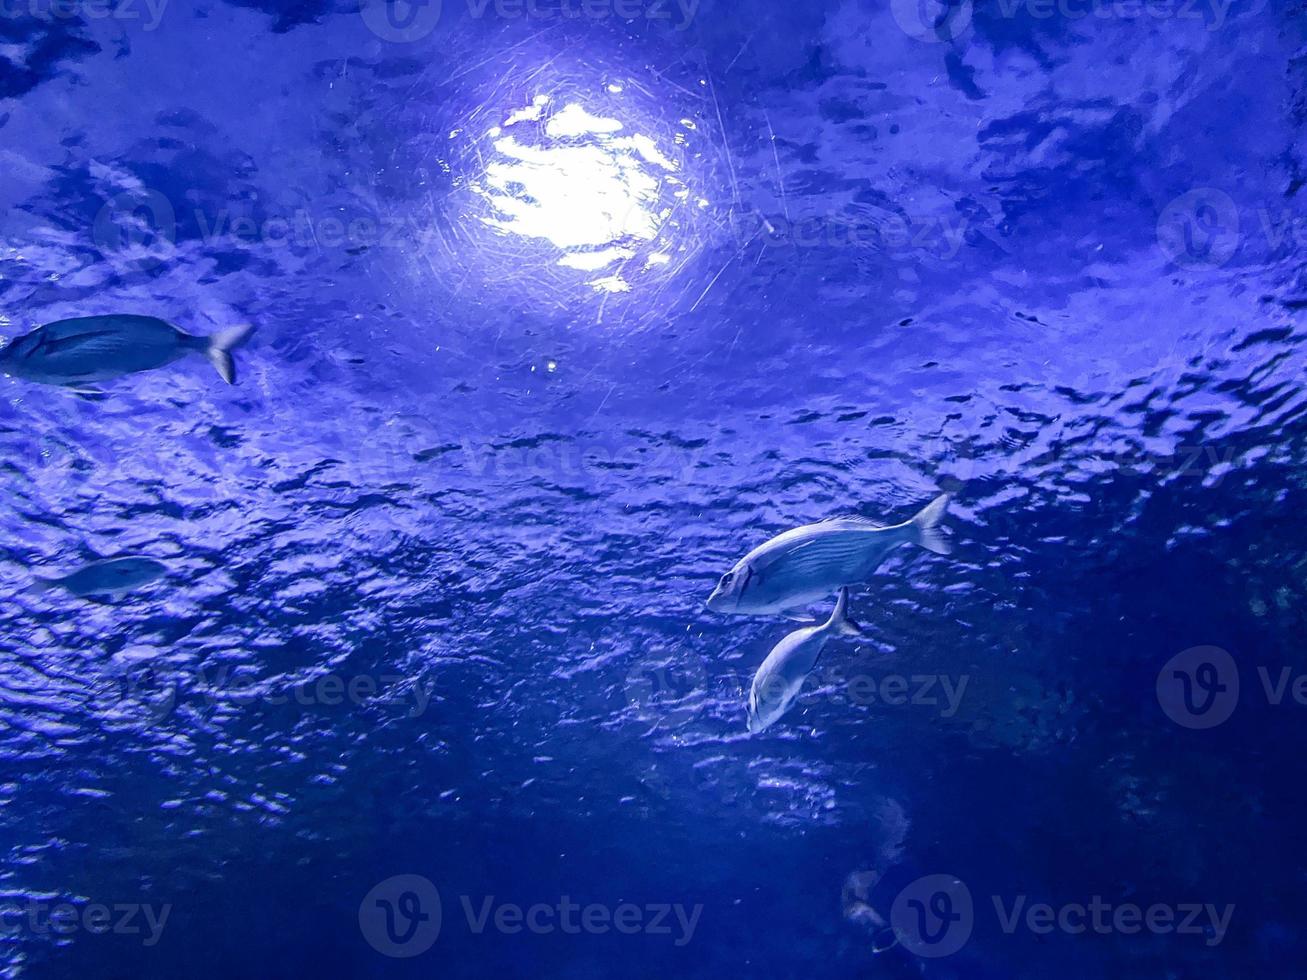 observation av de liv av fisk i de akvarium. små, exotisk, färgrik, ljust färgad fisk simma under vattnet tillsammans. fisk simmade till de källa av ljus under vatten foto